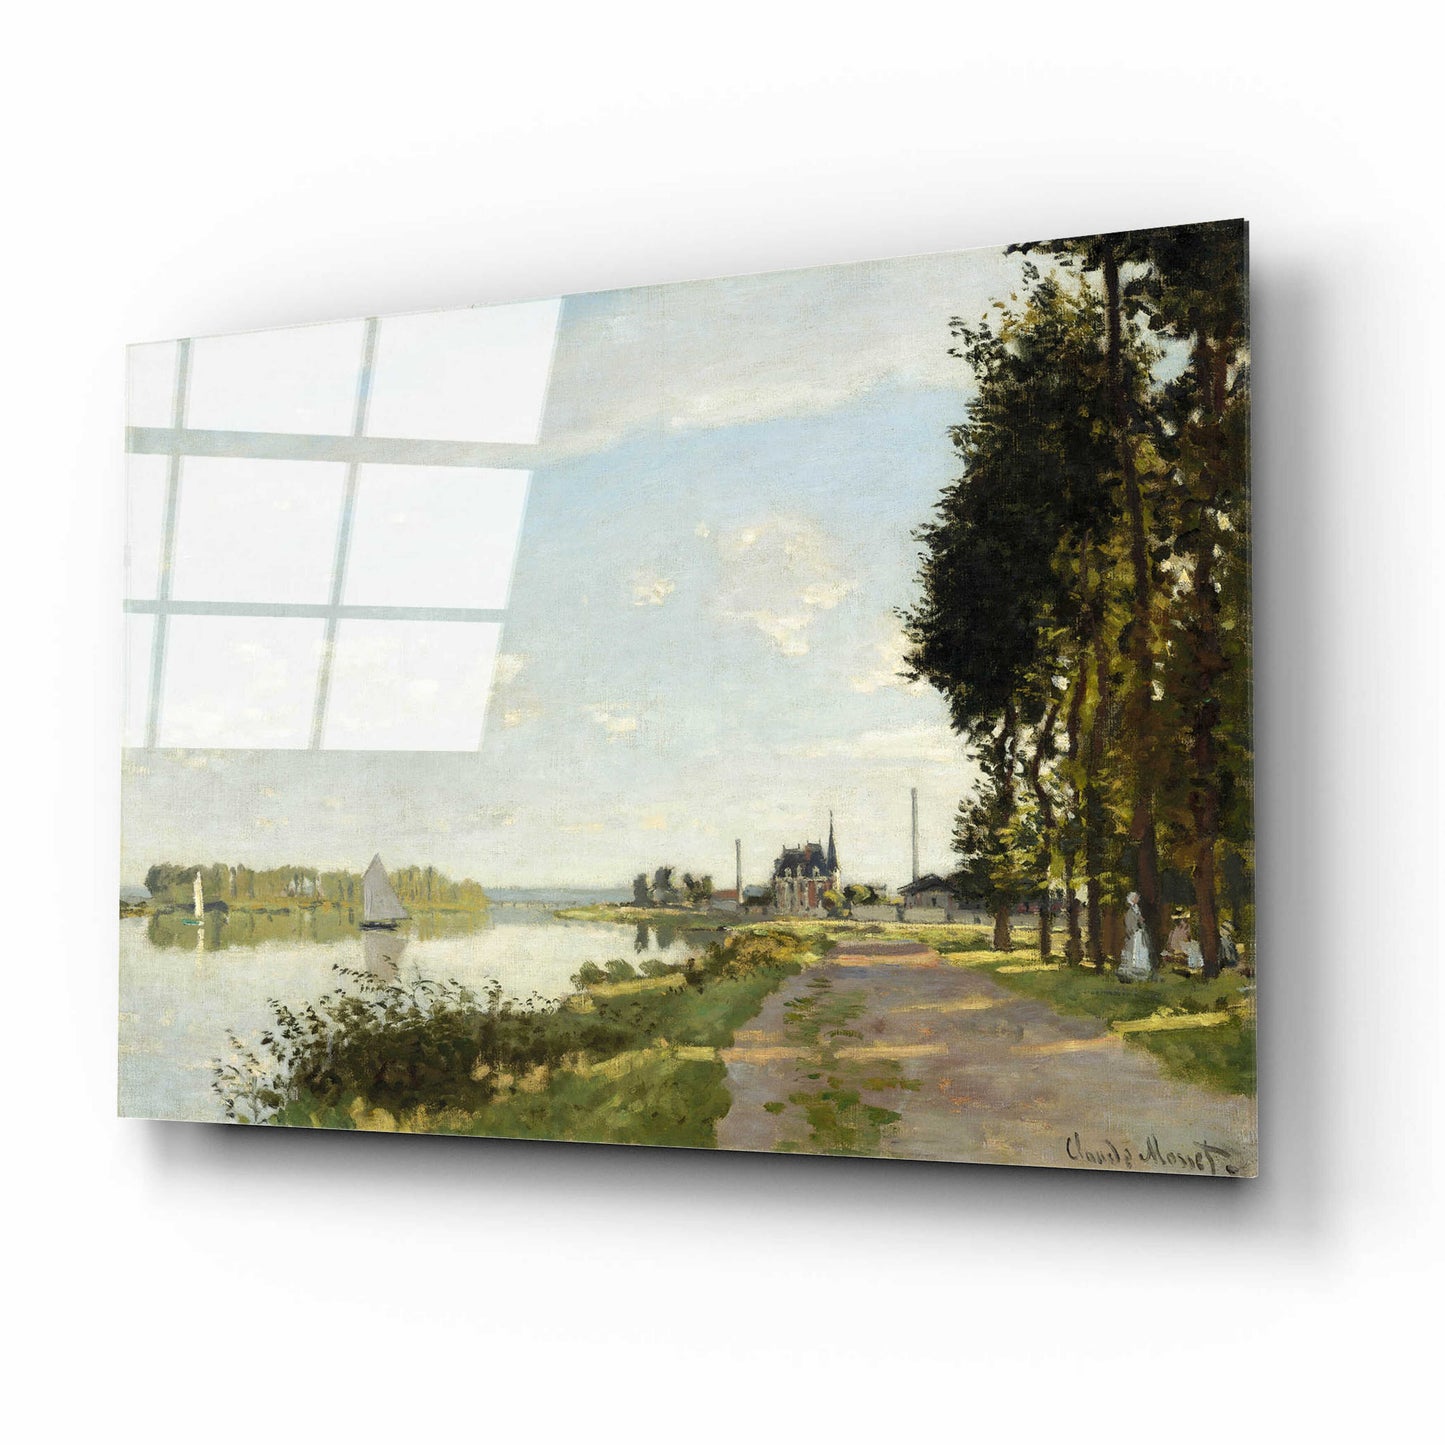 Epic Art 'Argenteuil' by Claude Monet, Acrylic Glass Wall Art,16x12